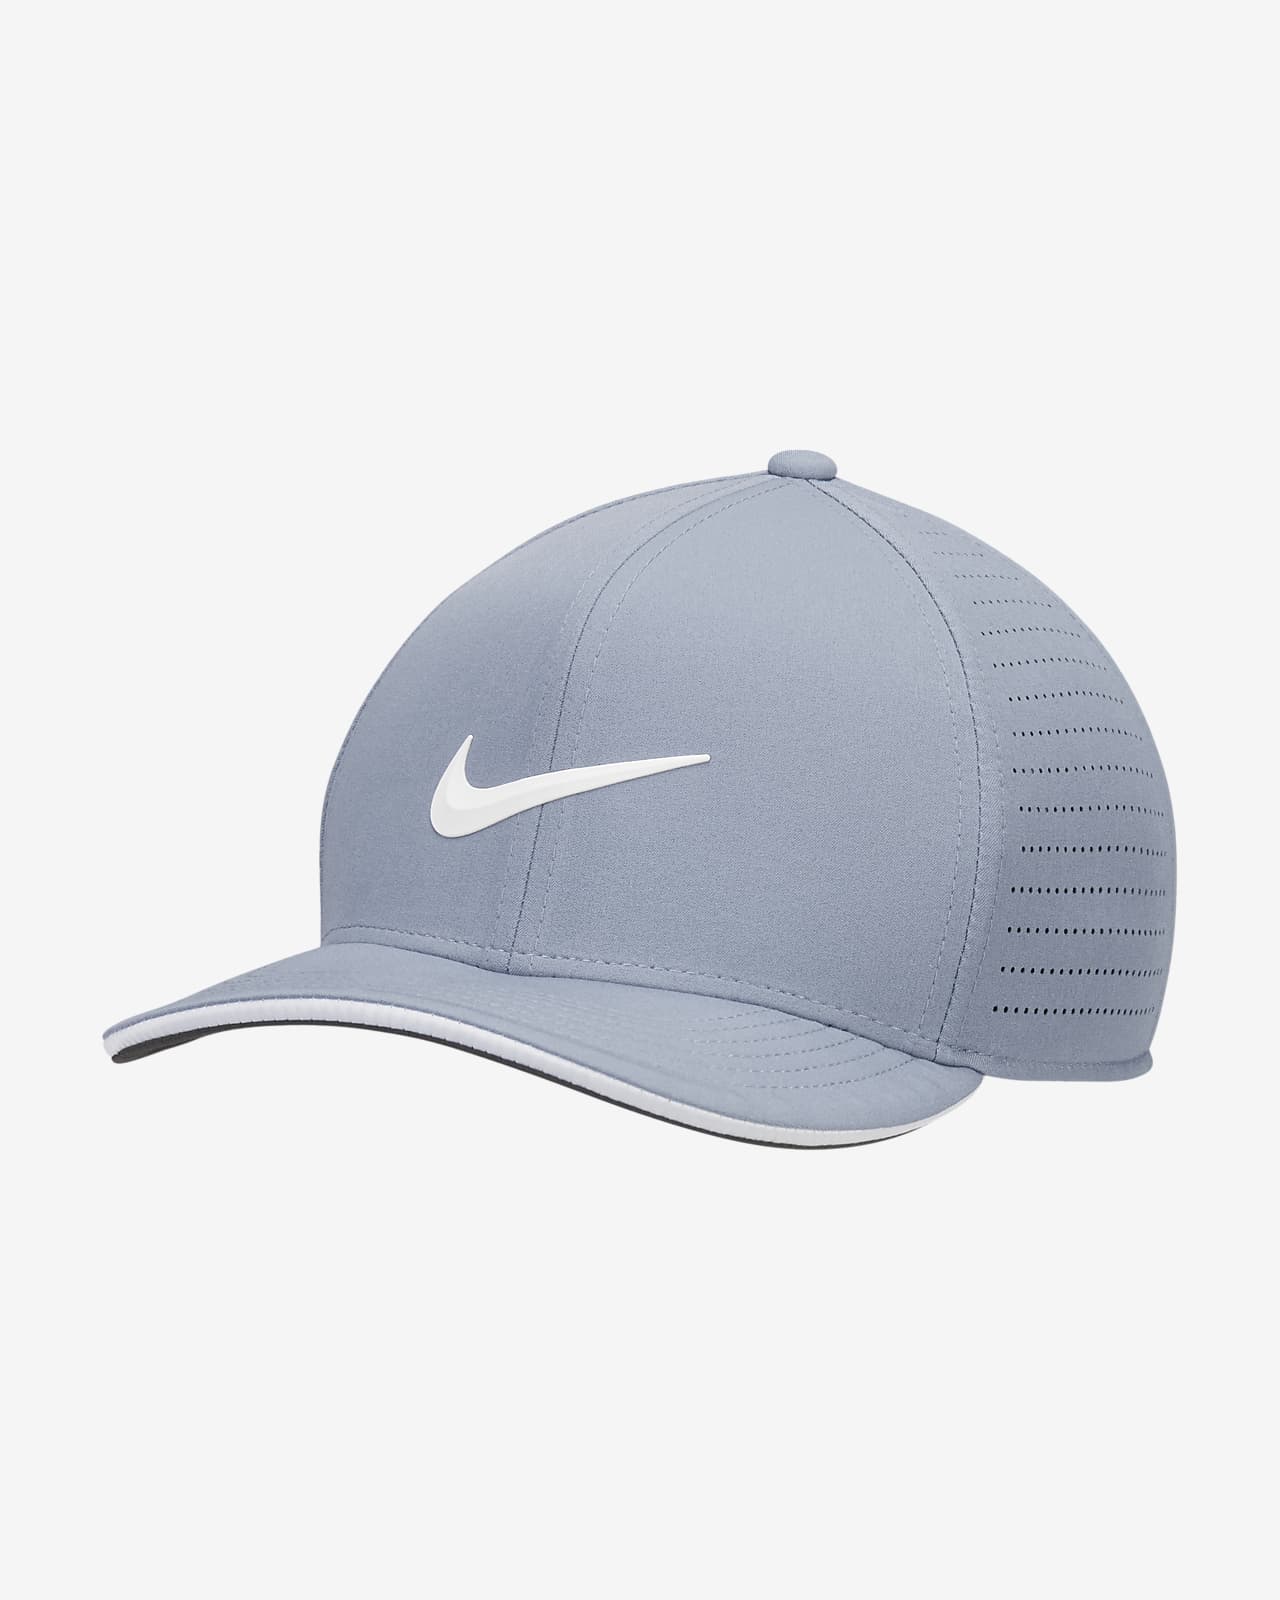 Gorra de Golf perforada Nike Dri-FIT ADV Nike.com